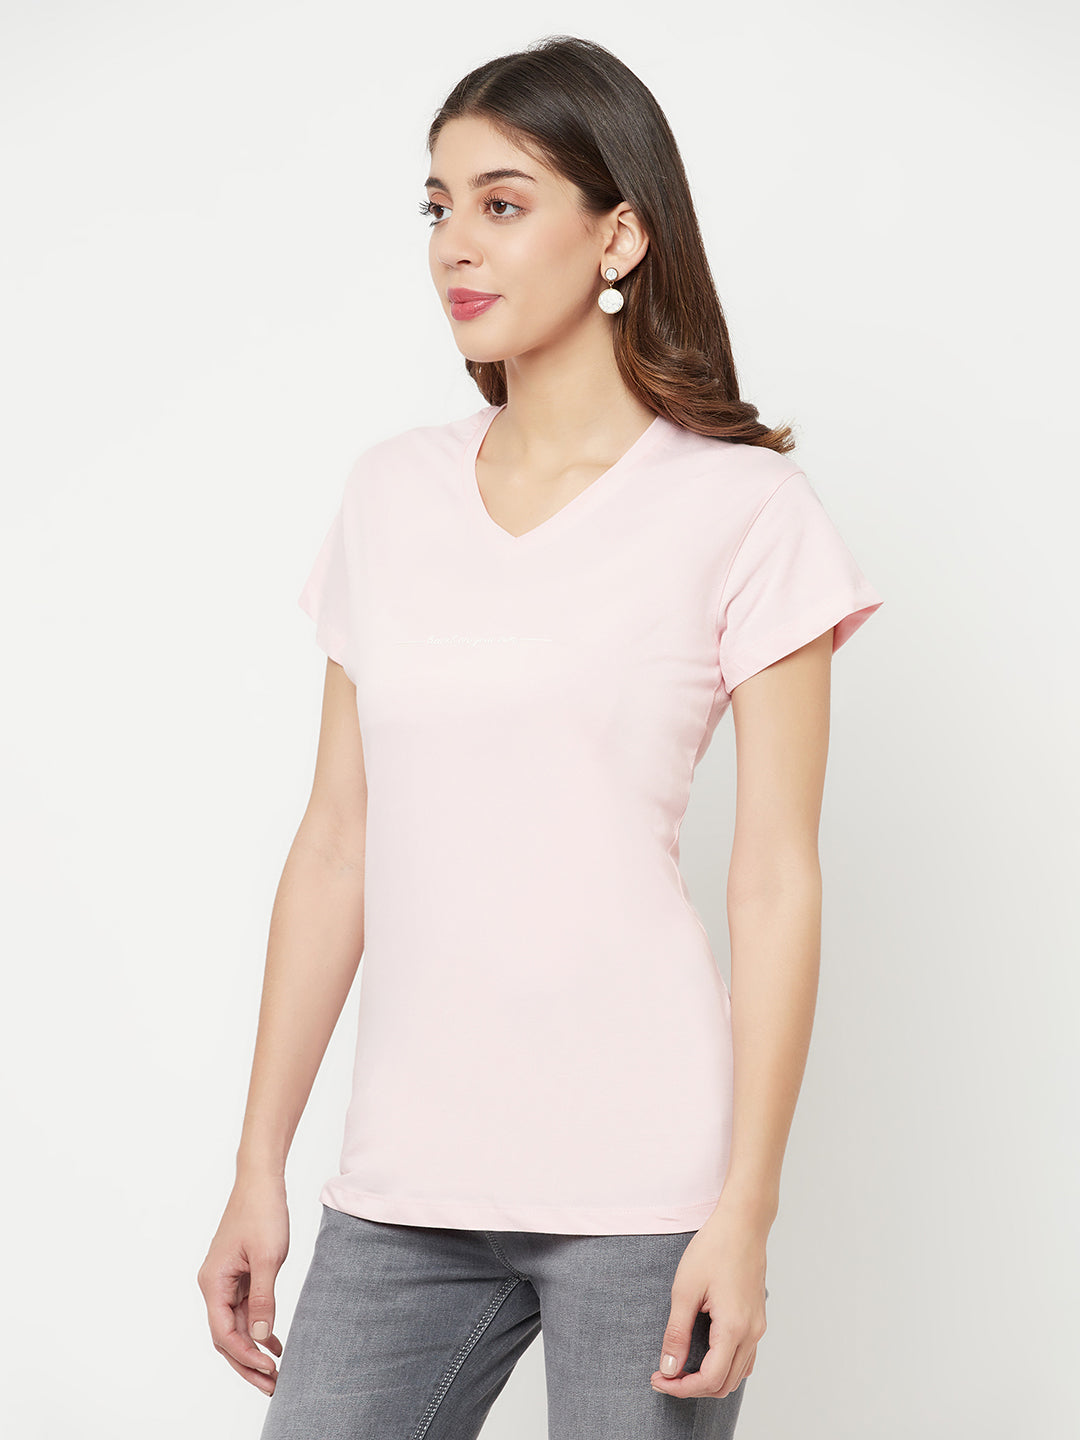 Light Pink Printed V-Neck T-Shirt - Women T-Shirts